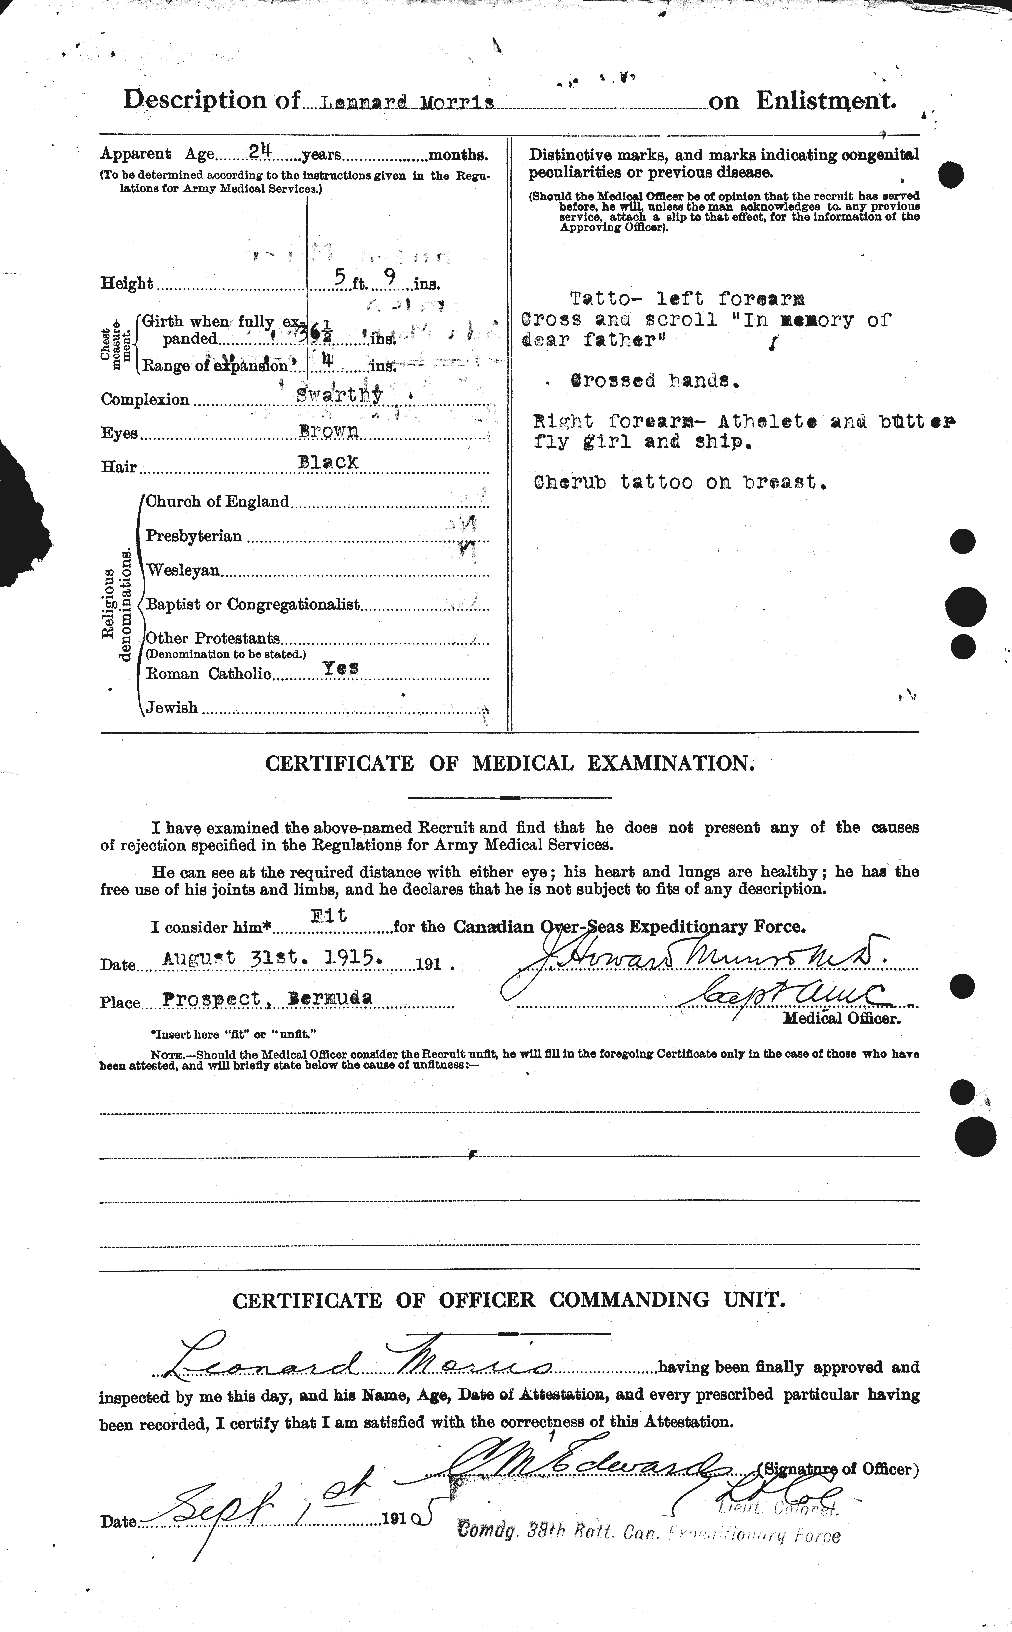 Dossiers du Personnel de la Première Guerre mondiale - CEC 508568b